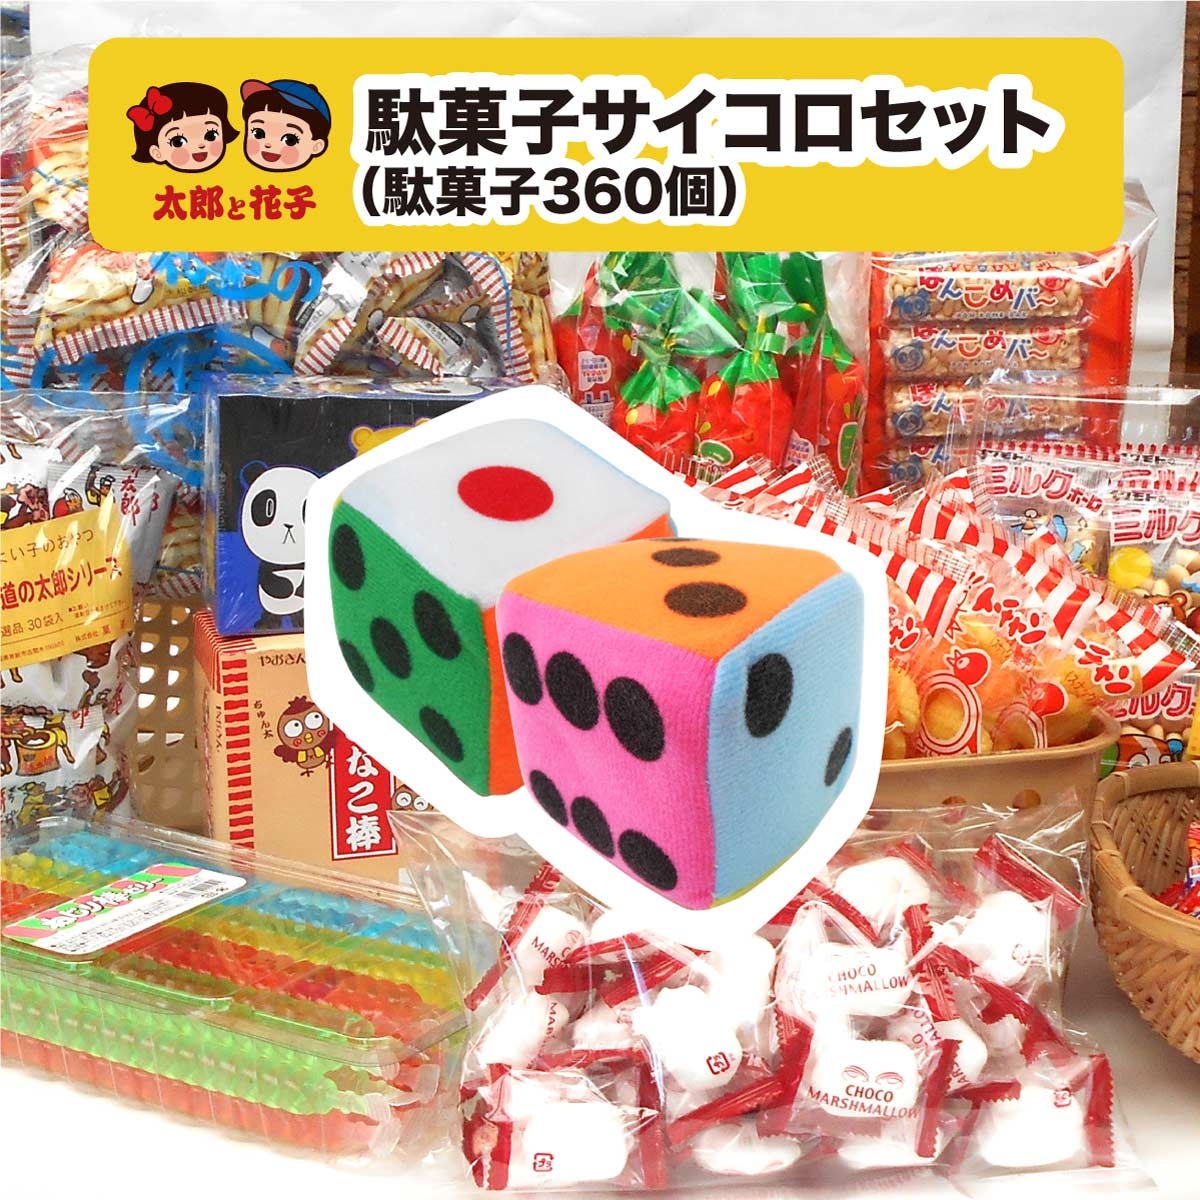 駄菓子サイコロセット100人分 駄菓子360個アソート